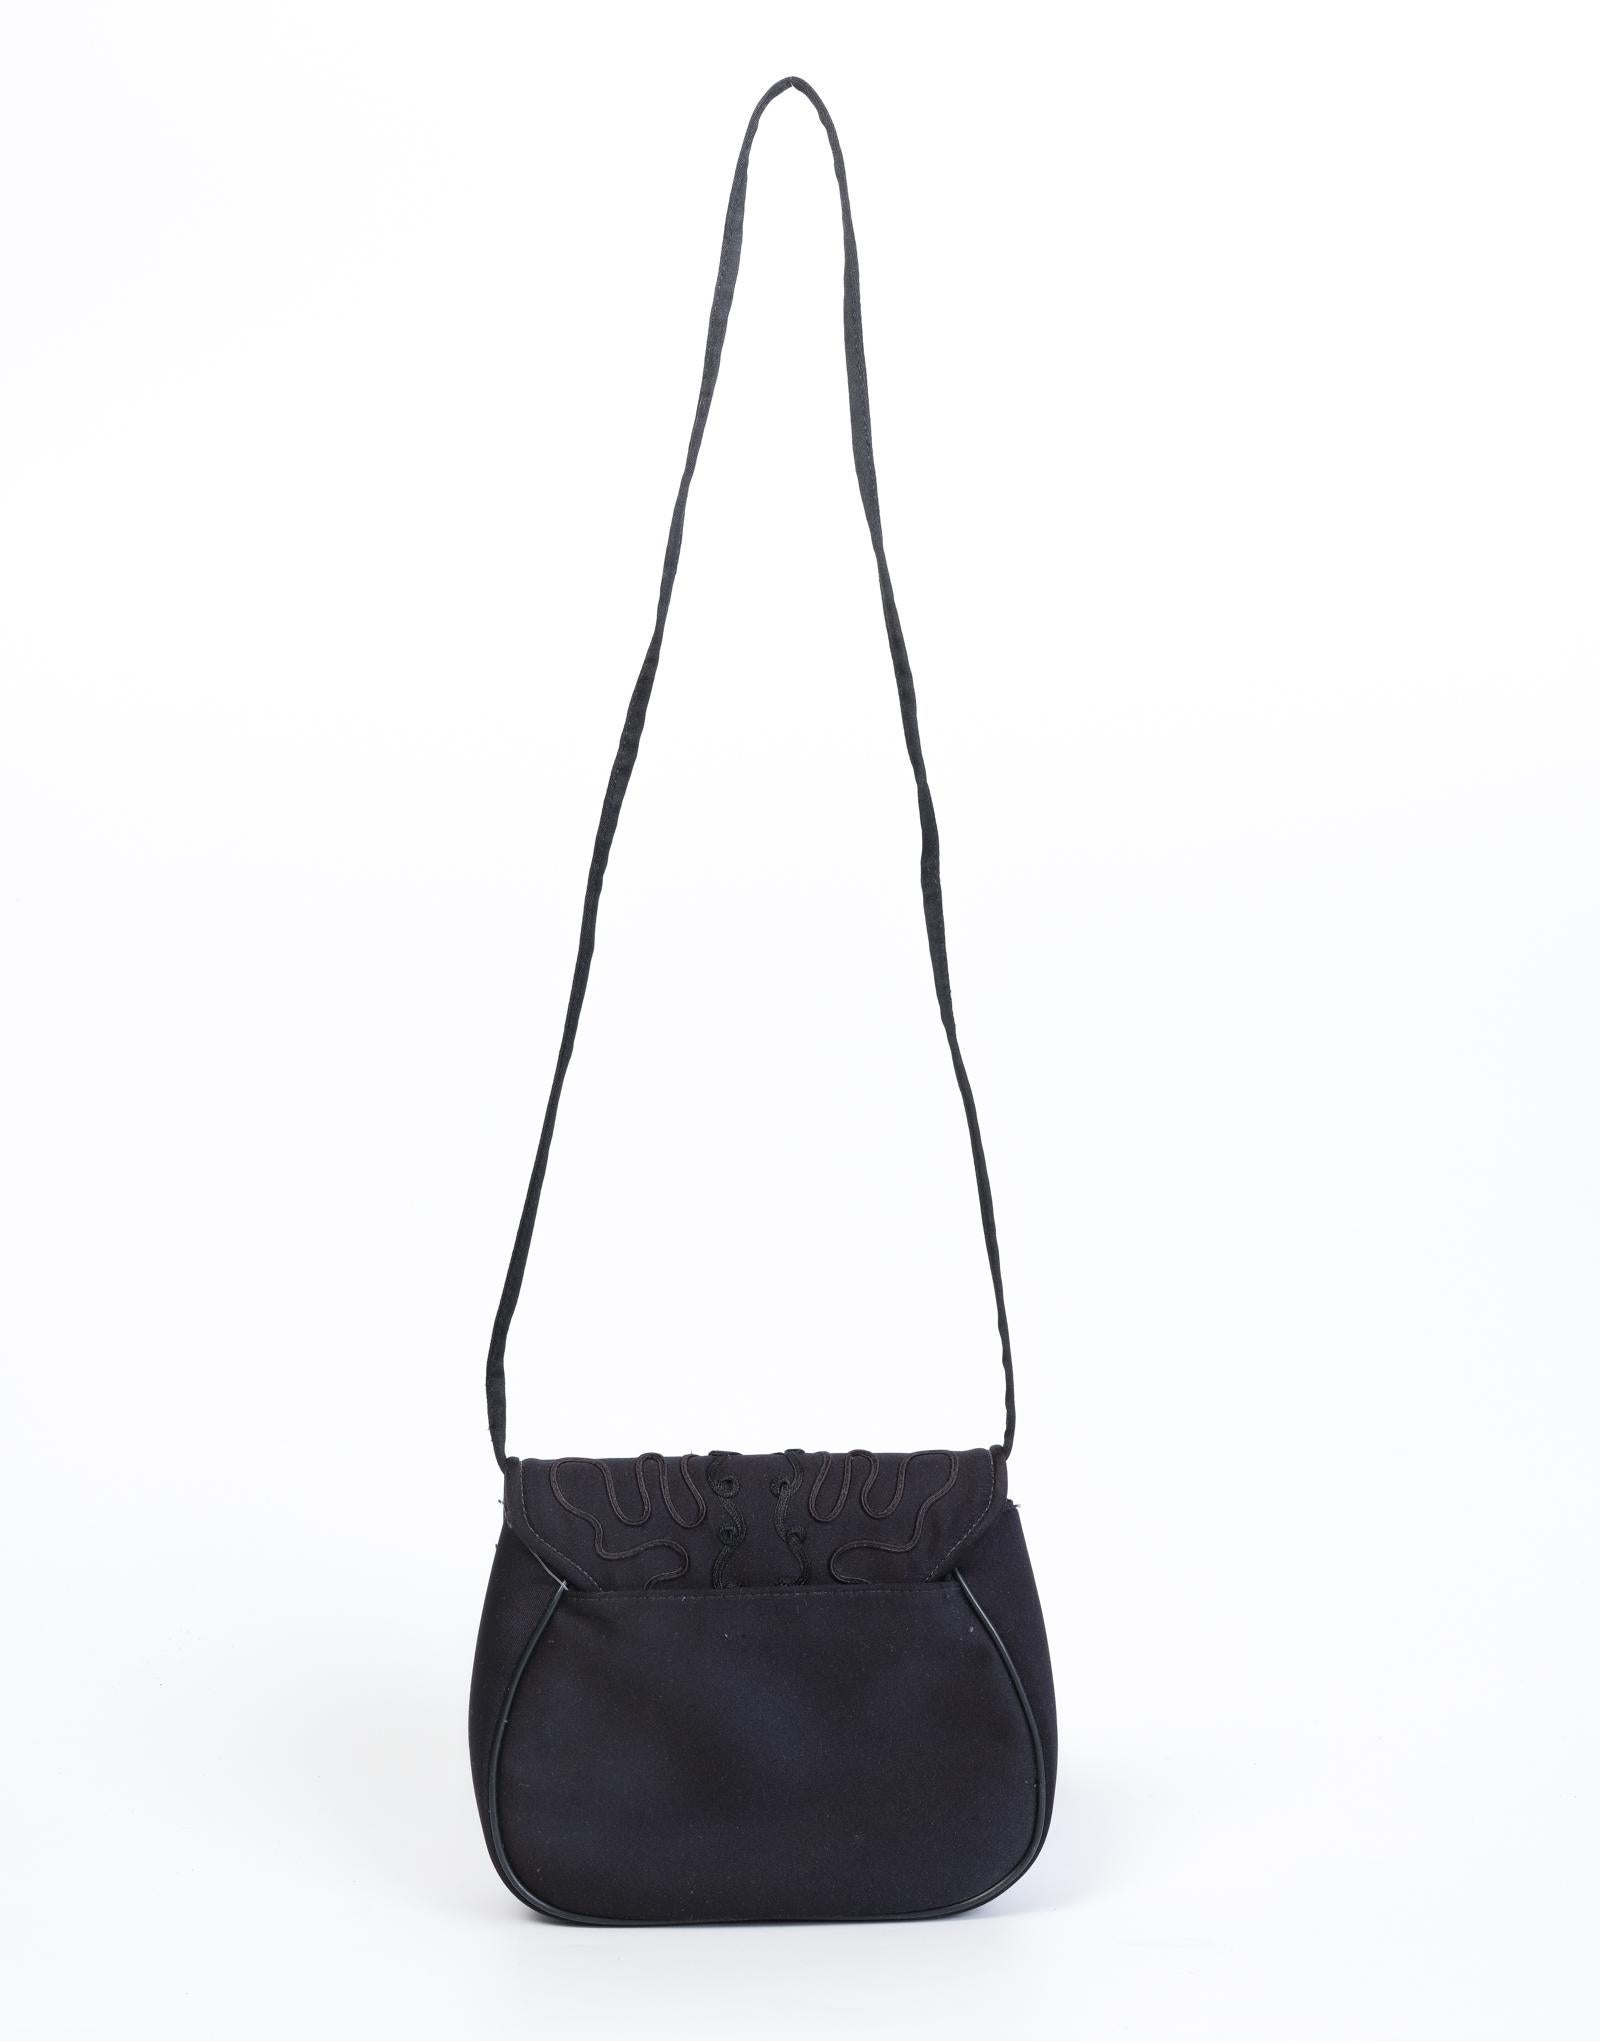 Ce sac vintage Givenchy est fabriqué en satin noir et présente une broderie ornée sur le rabat avant ainsi qu'une longue lanière en tissu pour le porter en bandoulière. Un style classique et sophistiqué.

COULEUR : Noir
MATÉRIAU : SATIN
CONDITION :